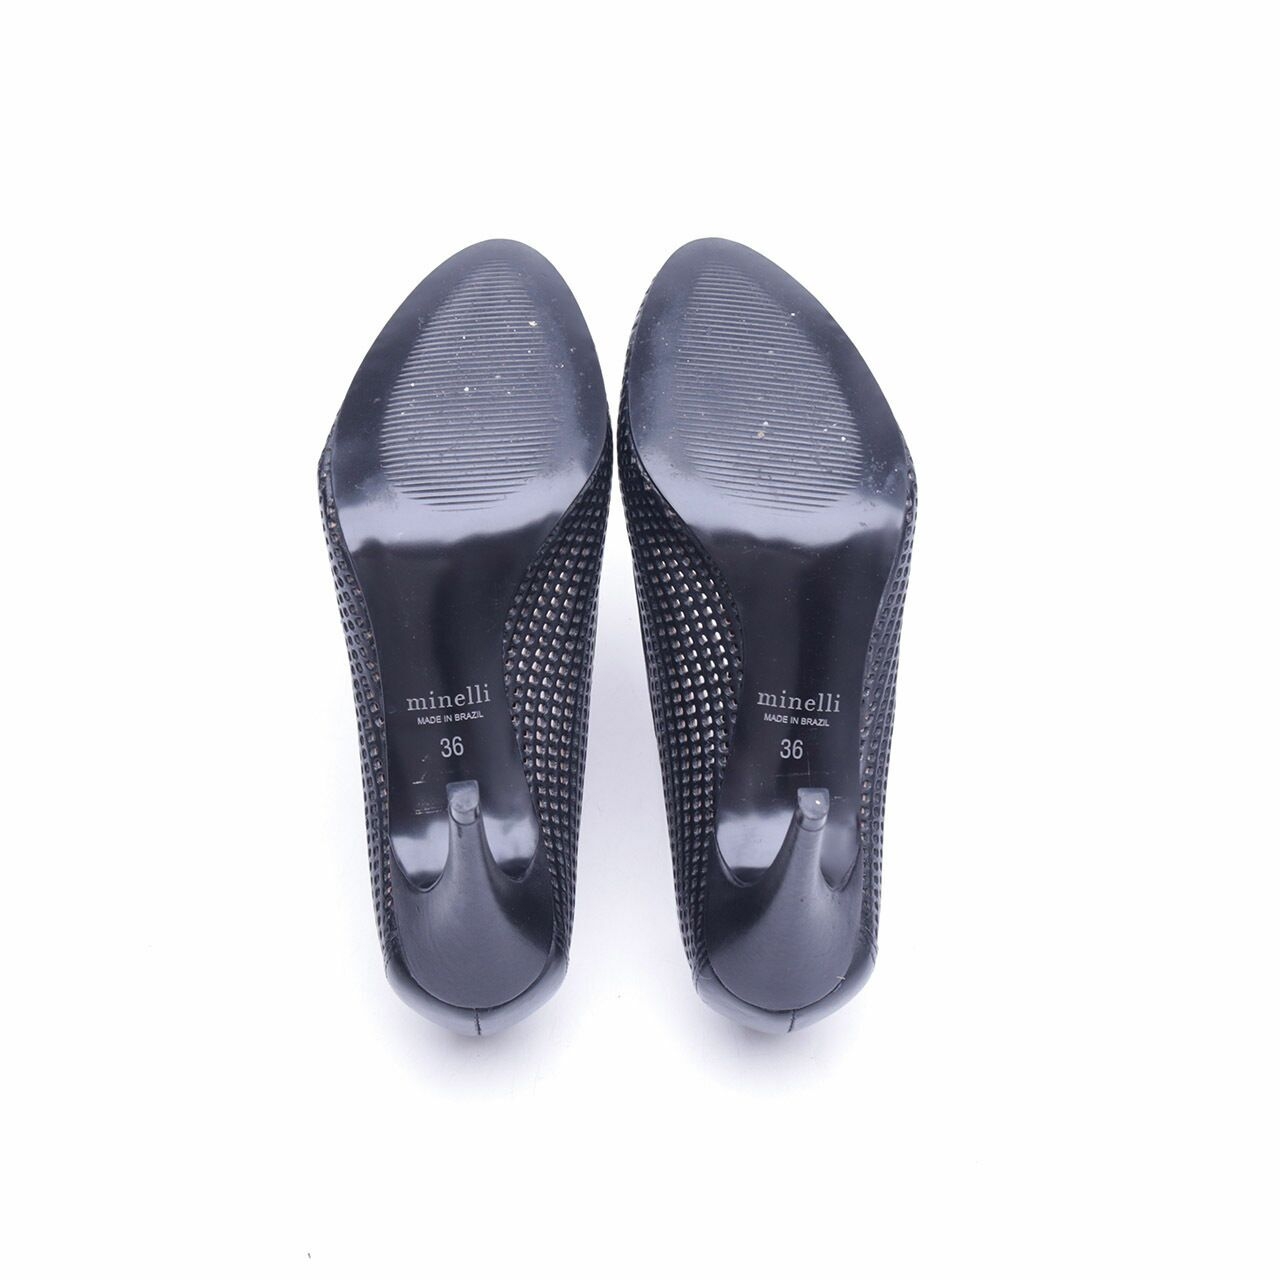 Minelli Black Perforated Heels